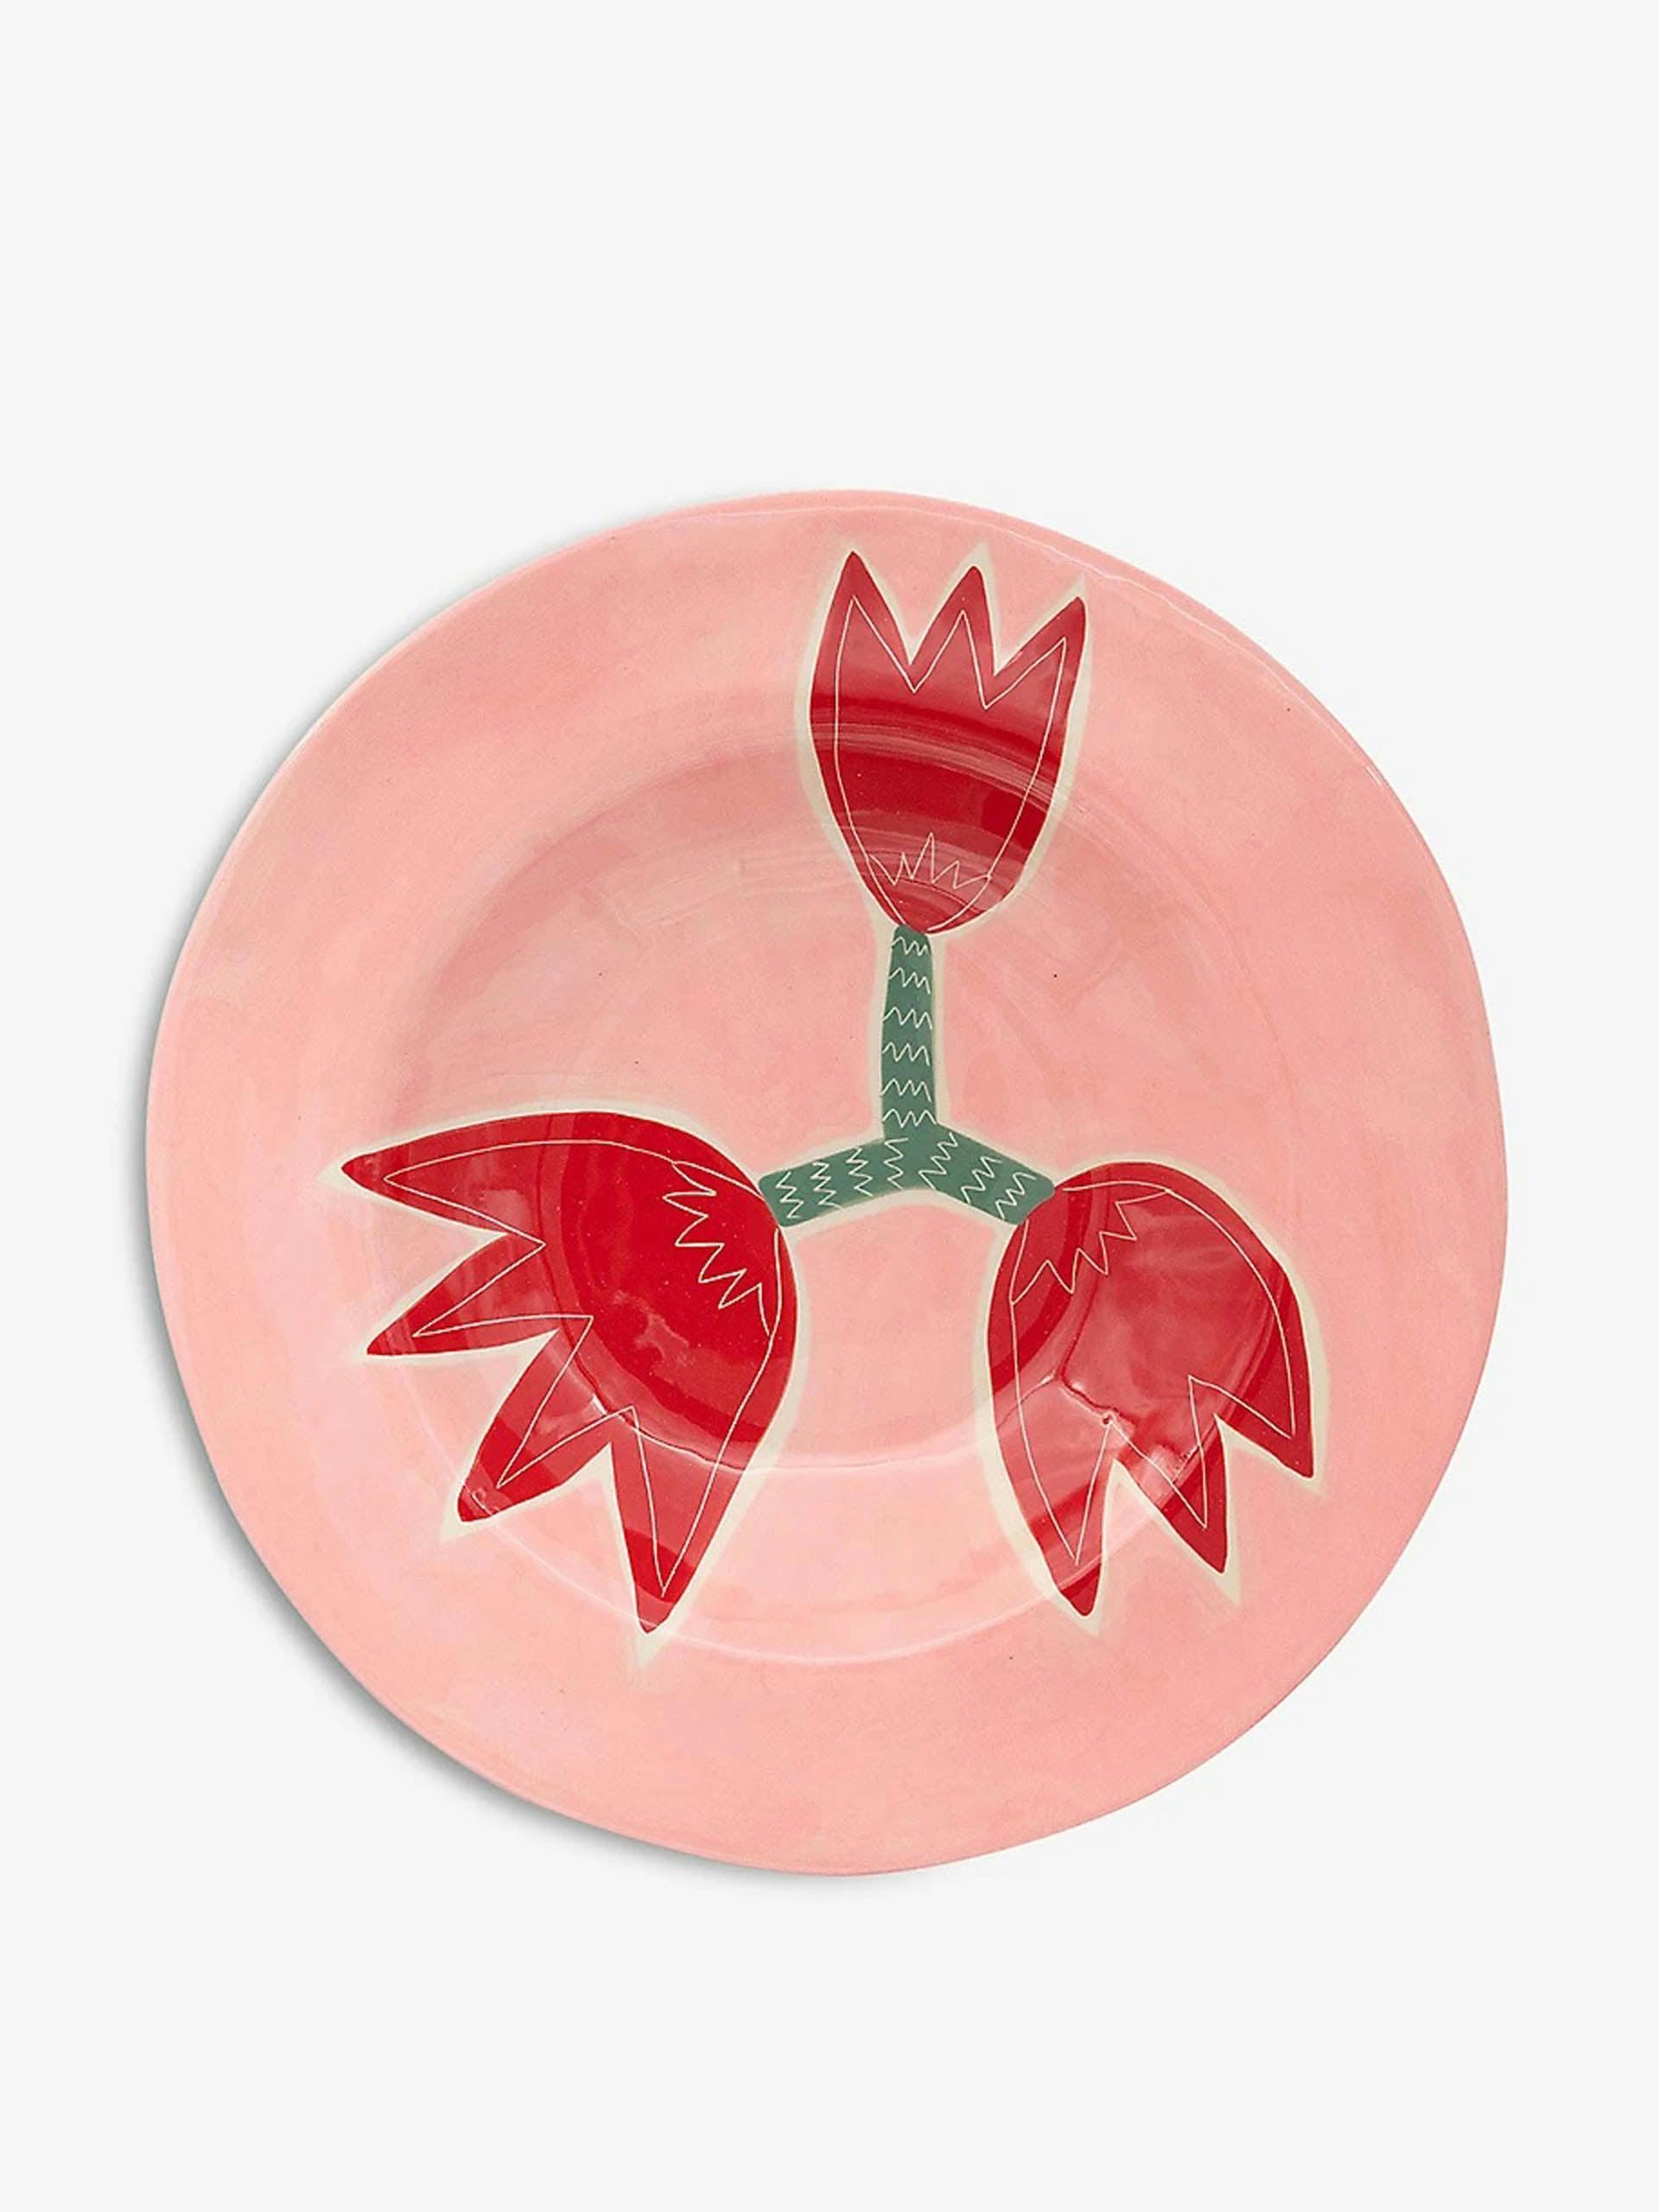 Tulip hand-painted ceramic plate